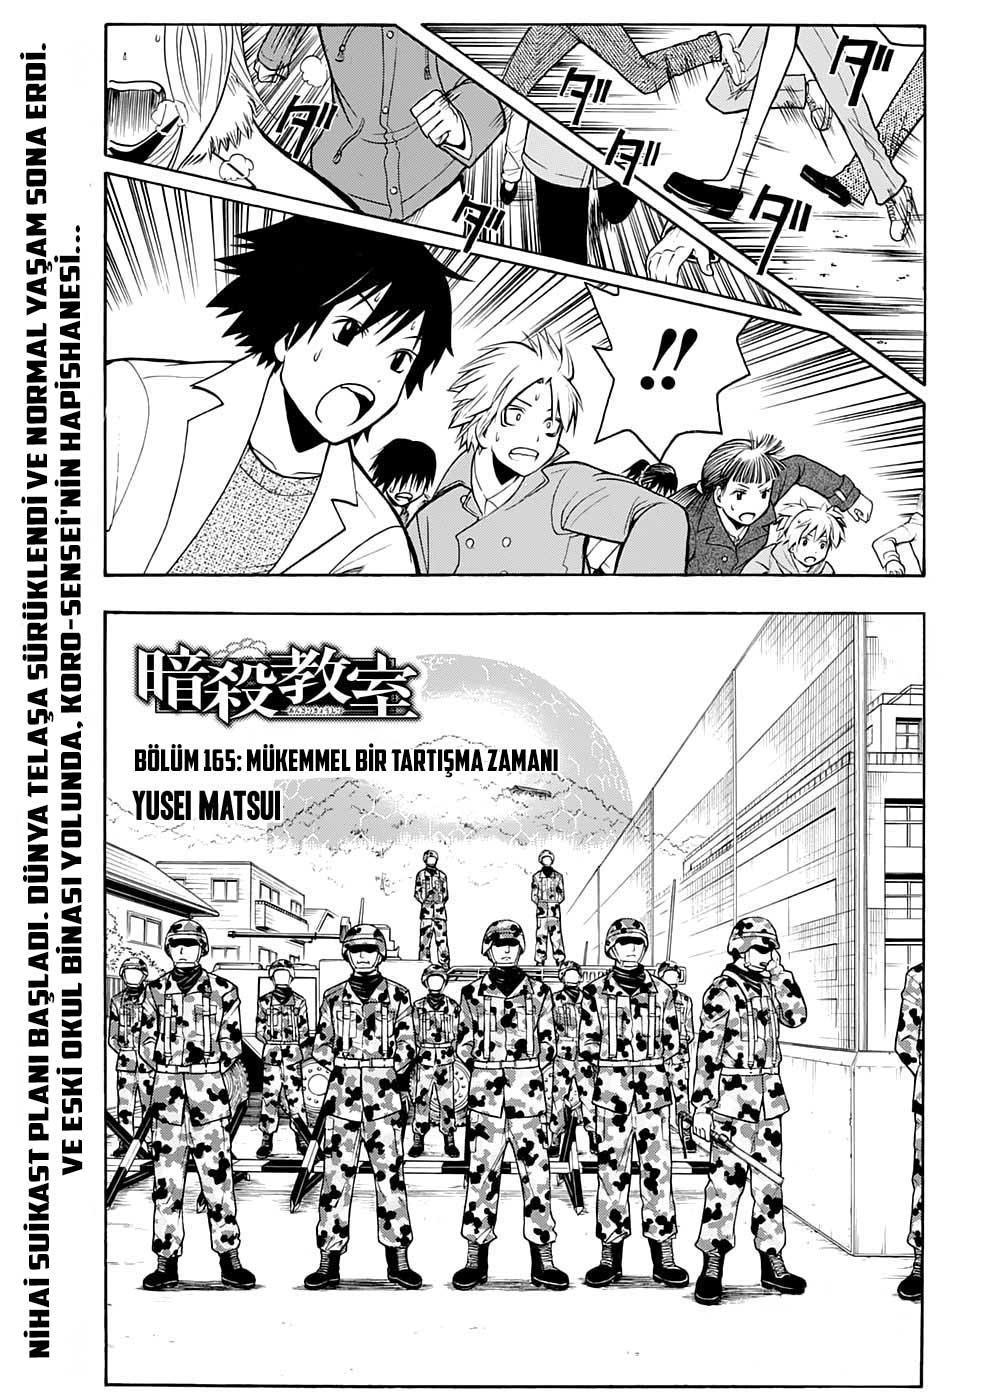 Assassination Classroom mangasının 165 bölümünün 2. sayfasını okuyorsunuz.